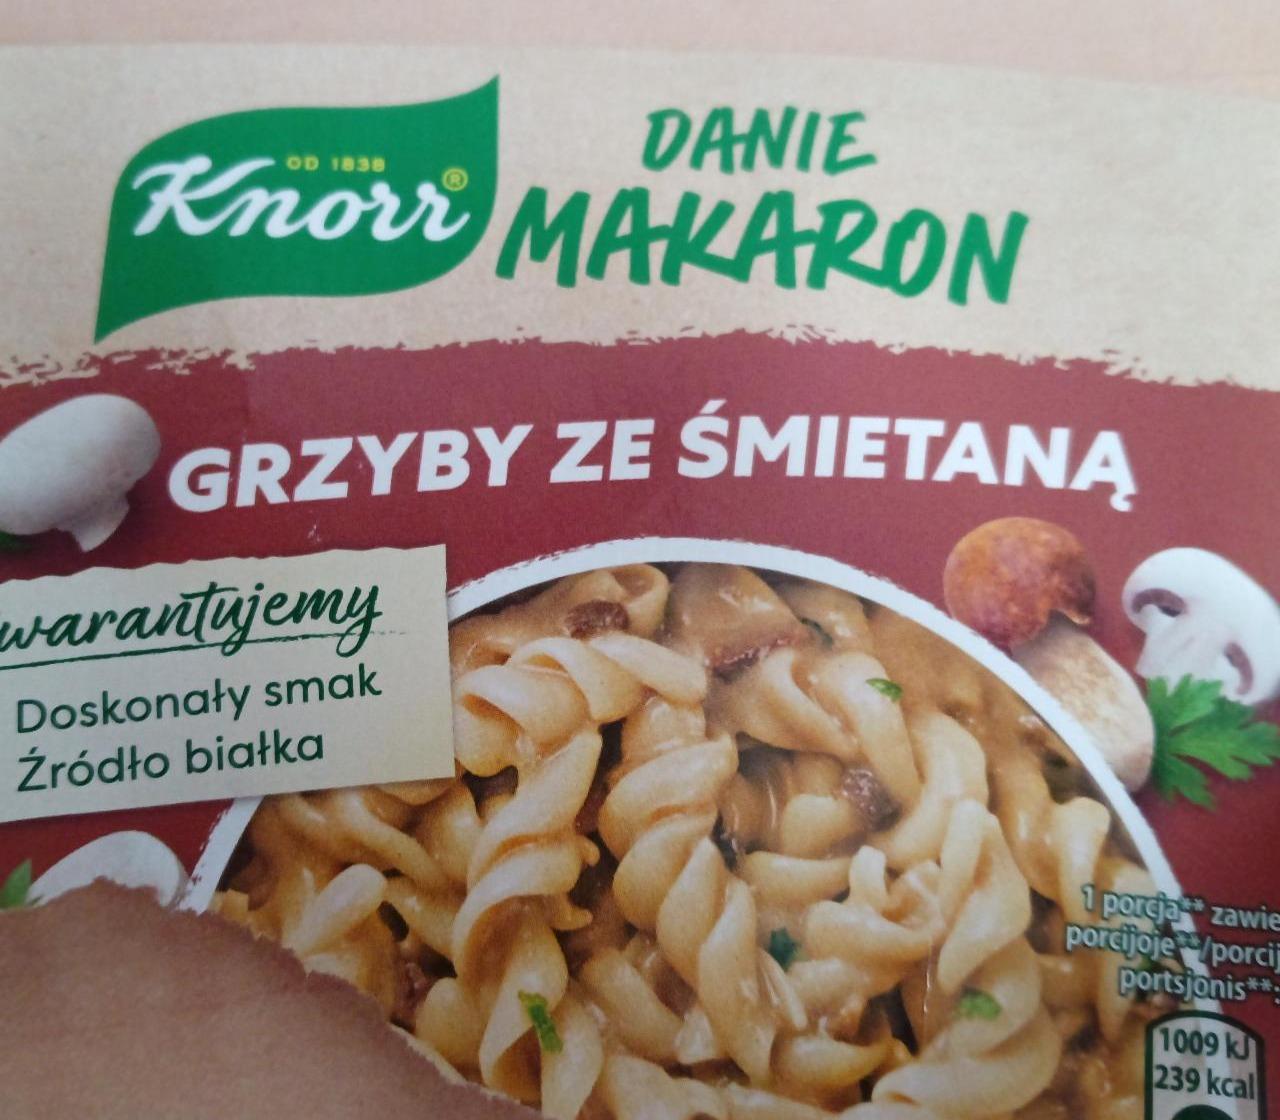 Fotografie - Danie makaron Grzyby ze śmietaną Knorr